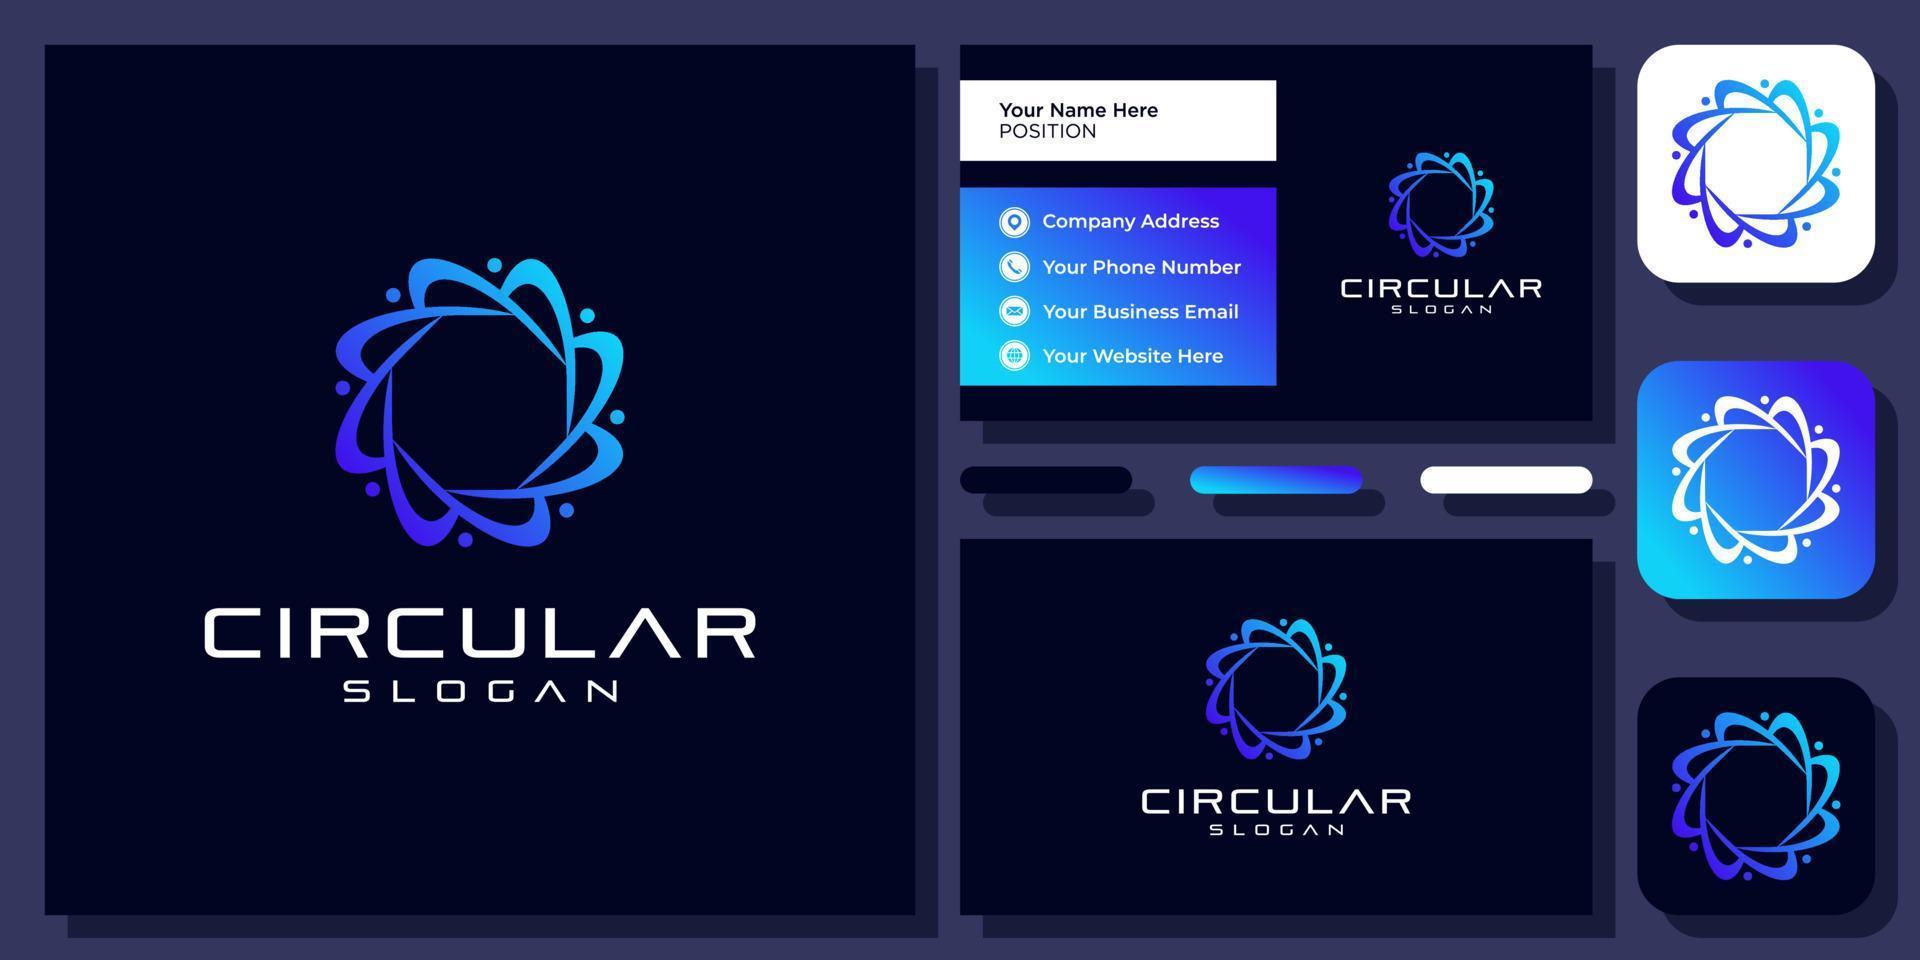 Átomo circular molécula química ciencia tecnología vector digital diseño de logotipo con tarjeta de visita